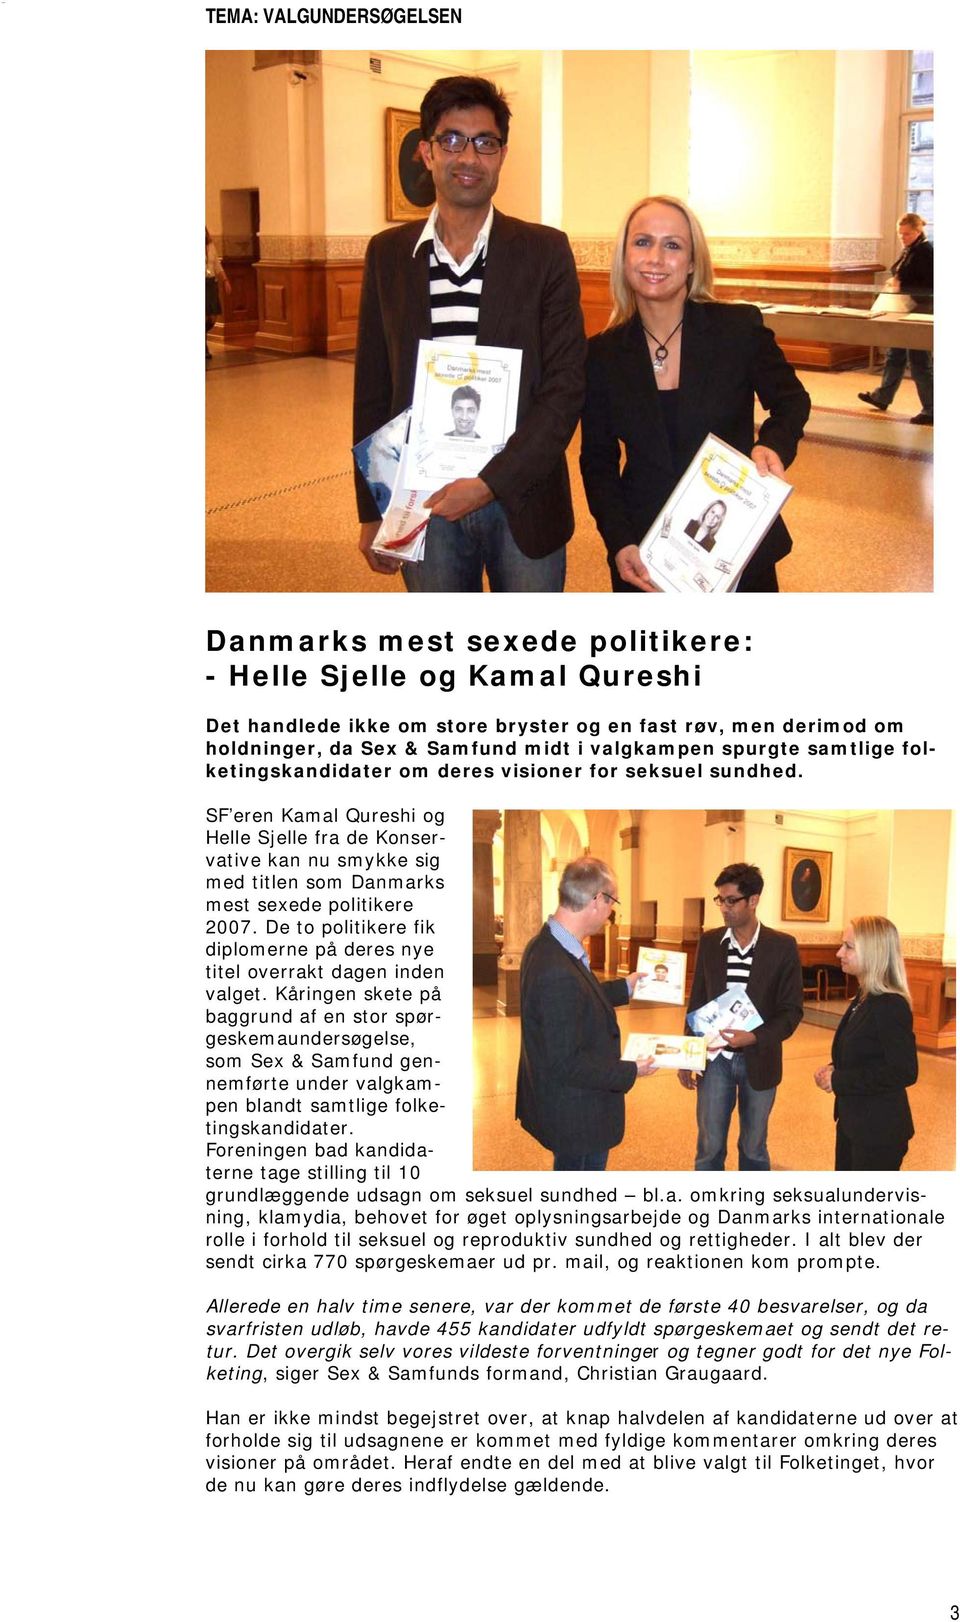 SF eren Kamal Qureshi og Helle Sjelle fra de Konservative kan nu smykke sig med titlen som Danmarks mest sexede politikere 2007.